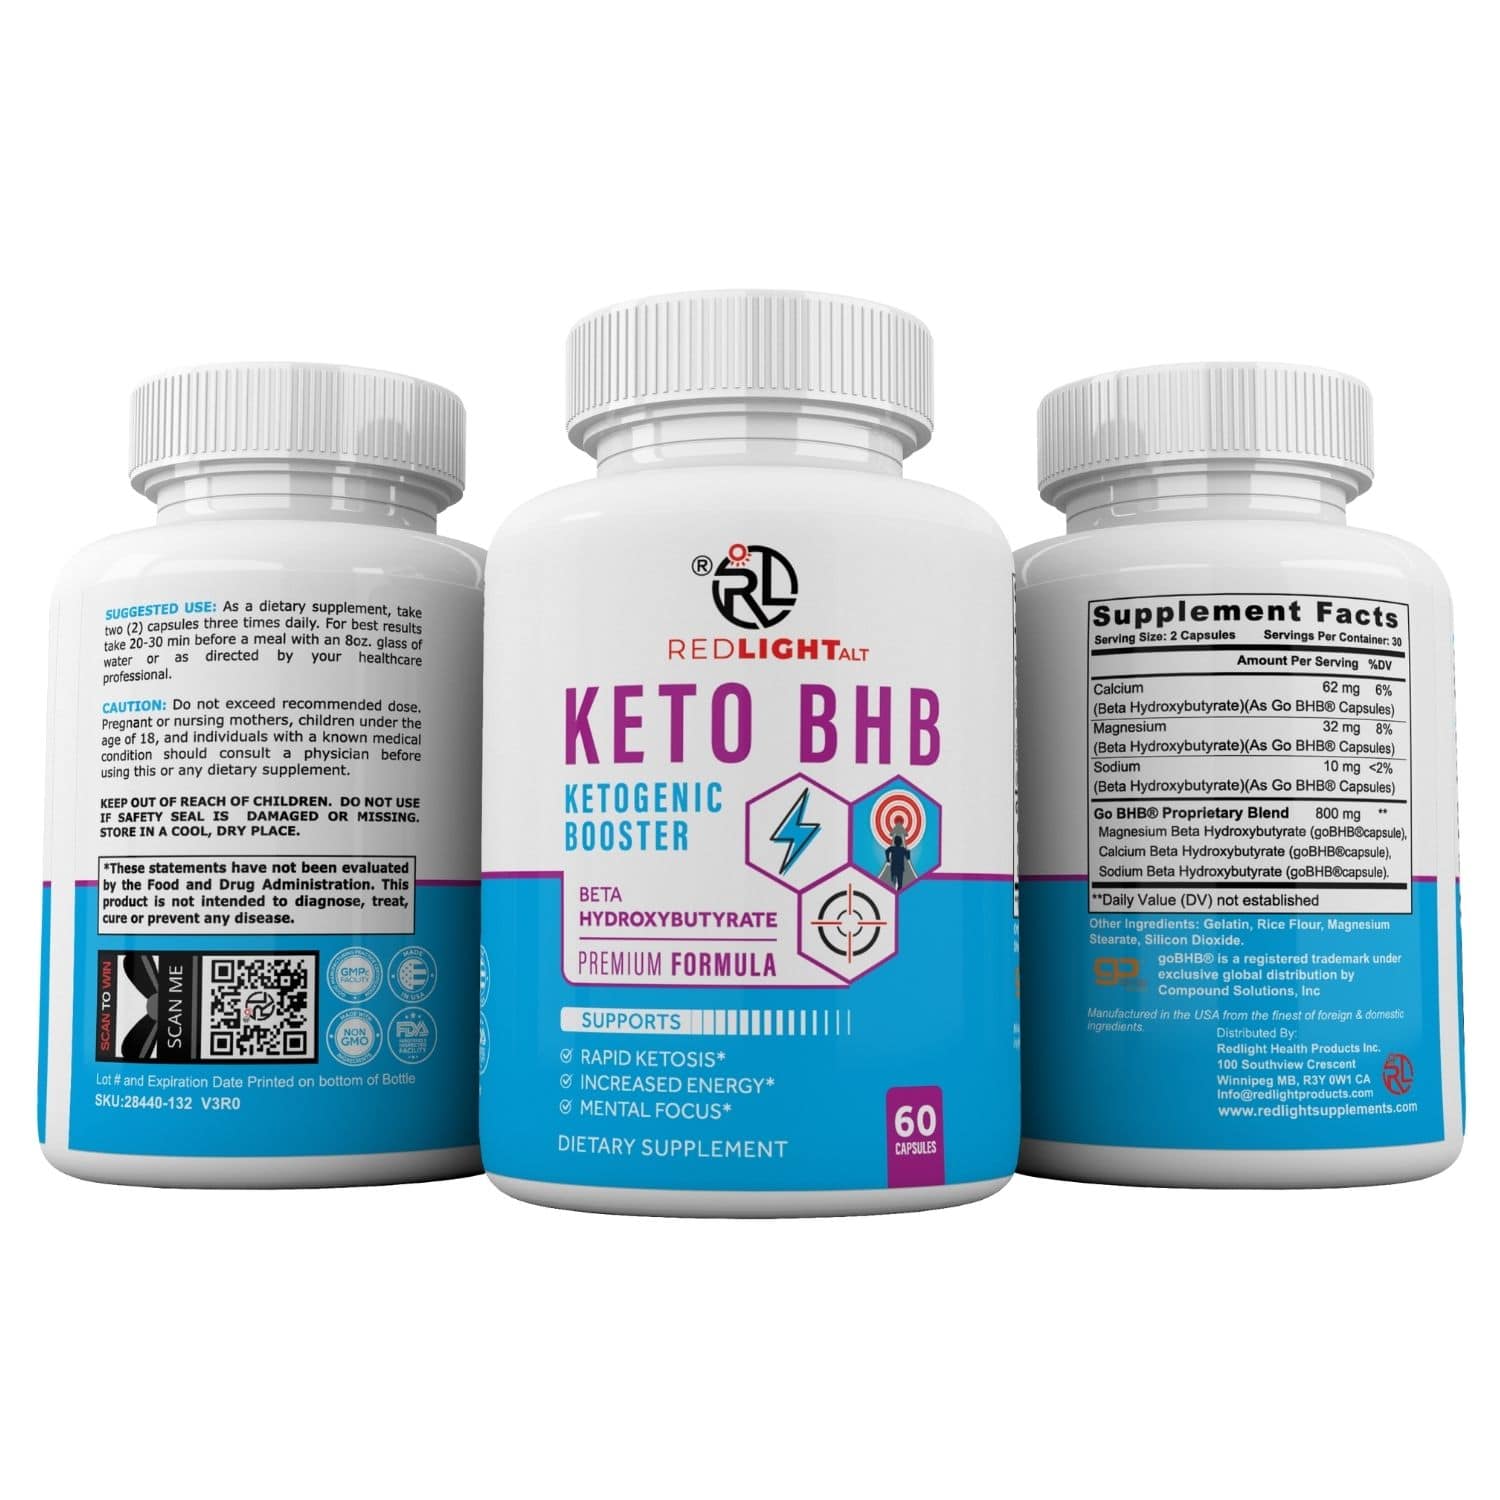 Redlight ALT keto bhb capsules for weight loss